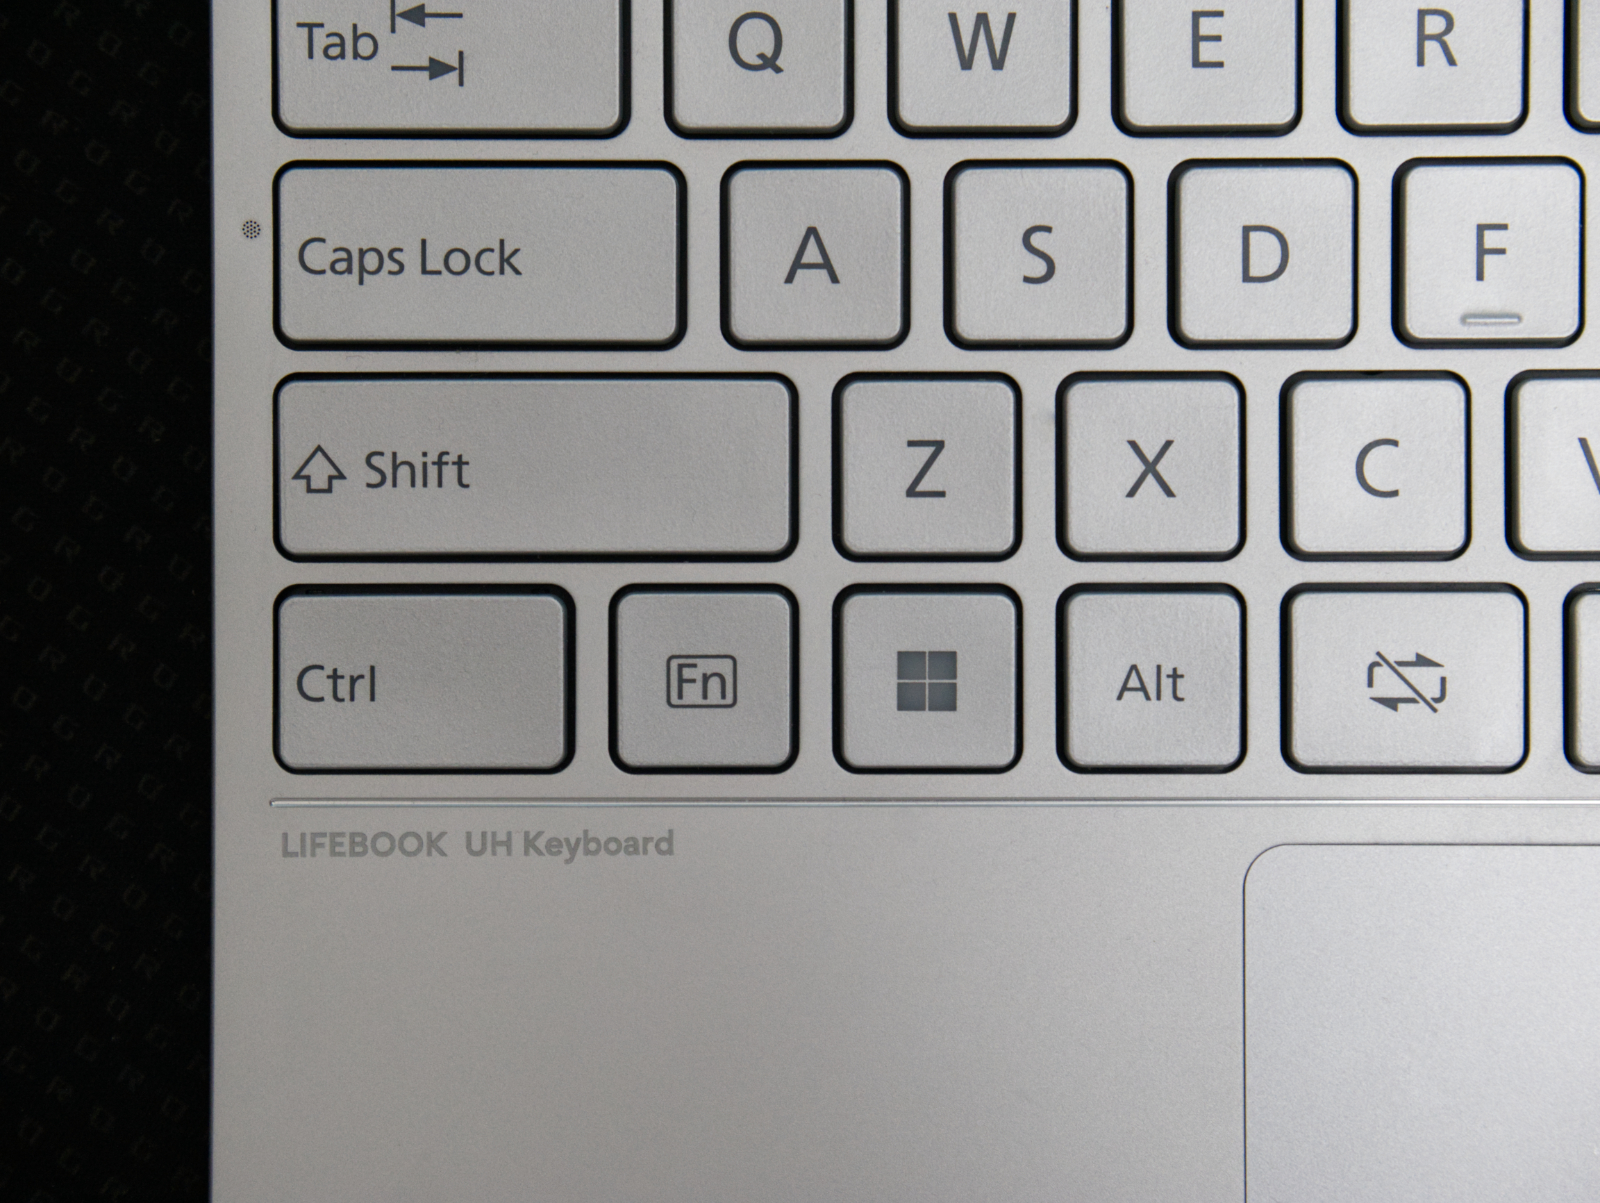 押し心地良好な薄型モバイルキーボード「LIFEBOOK UH Keyboard 